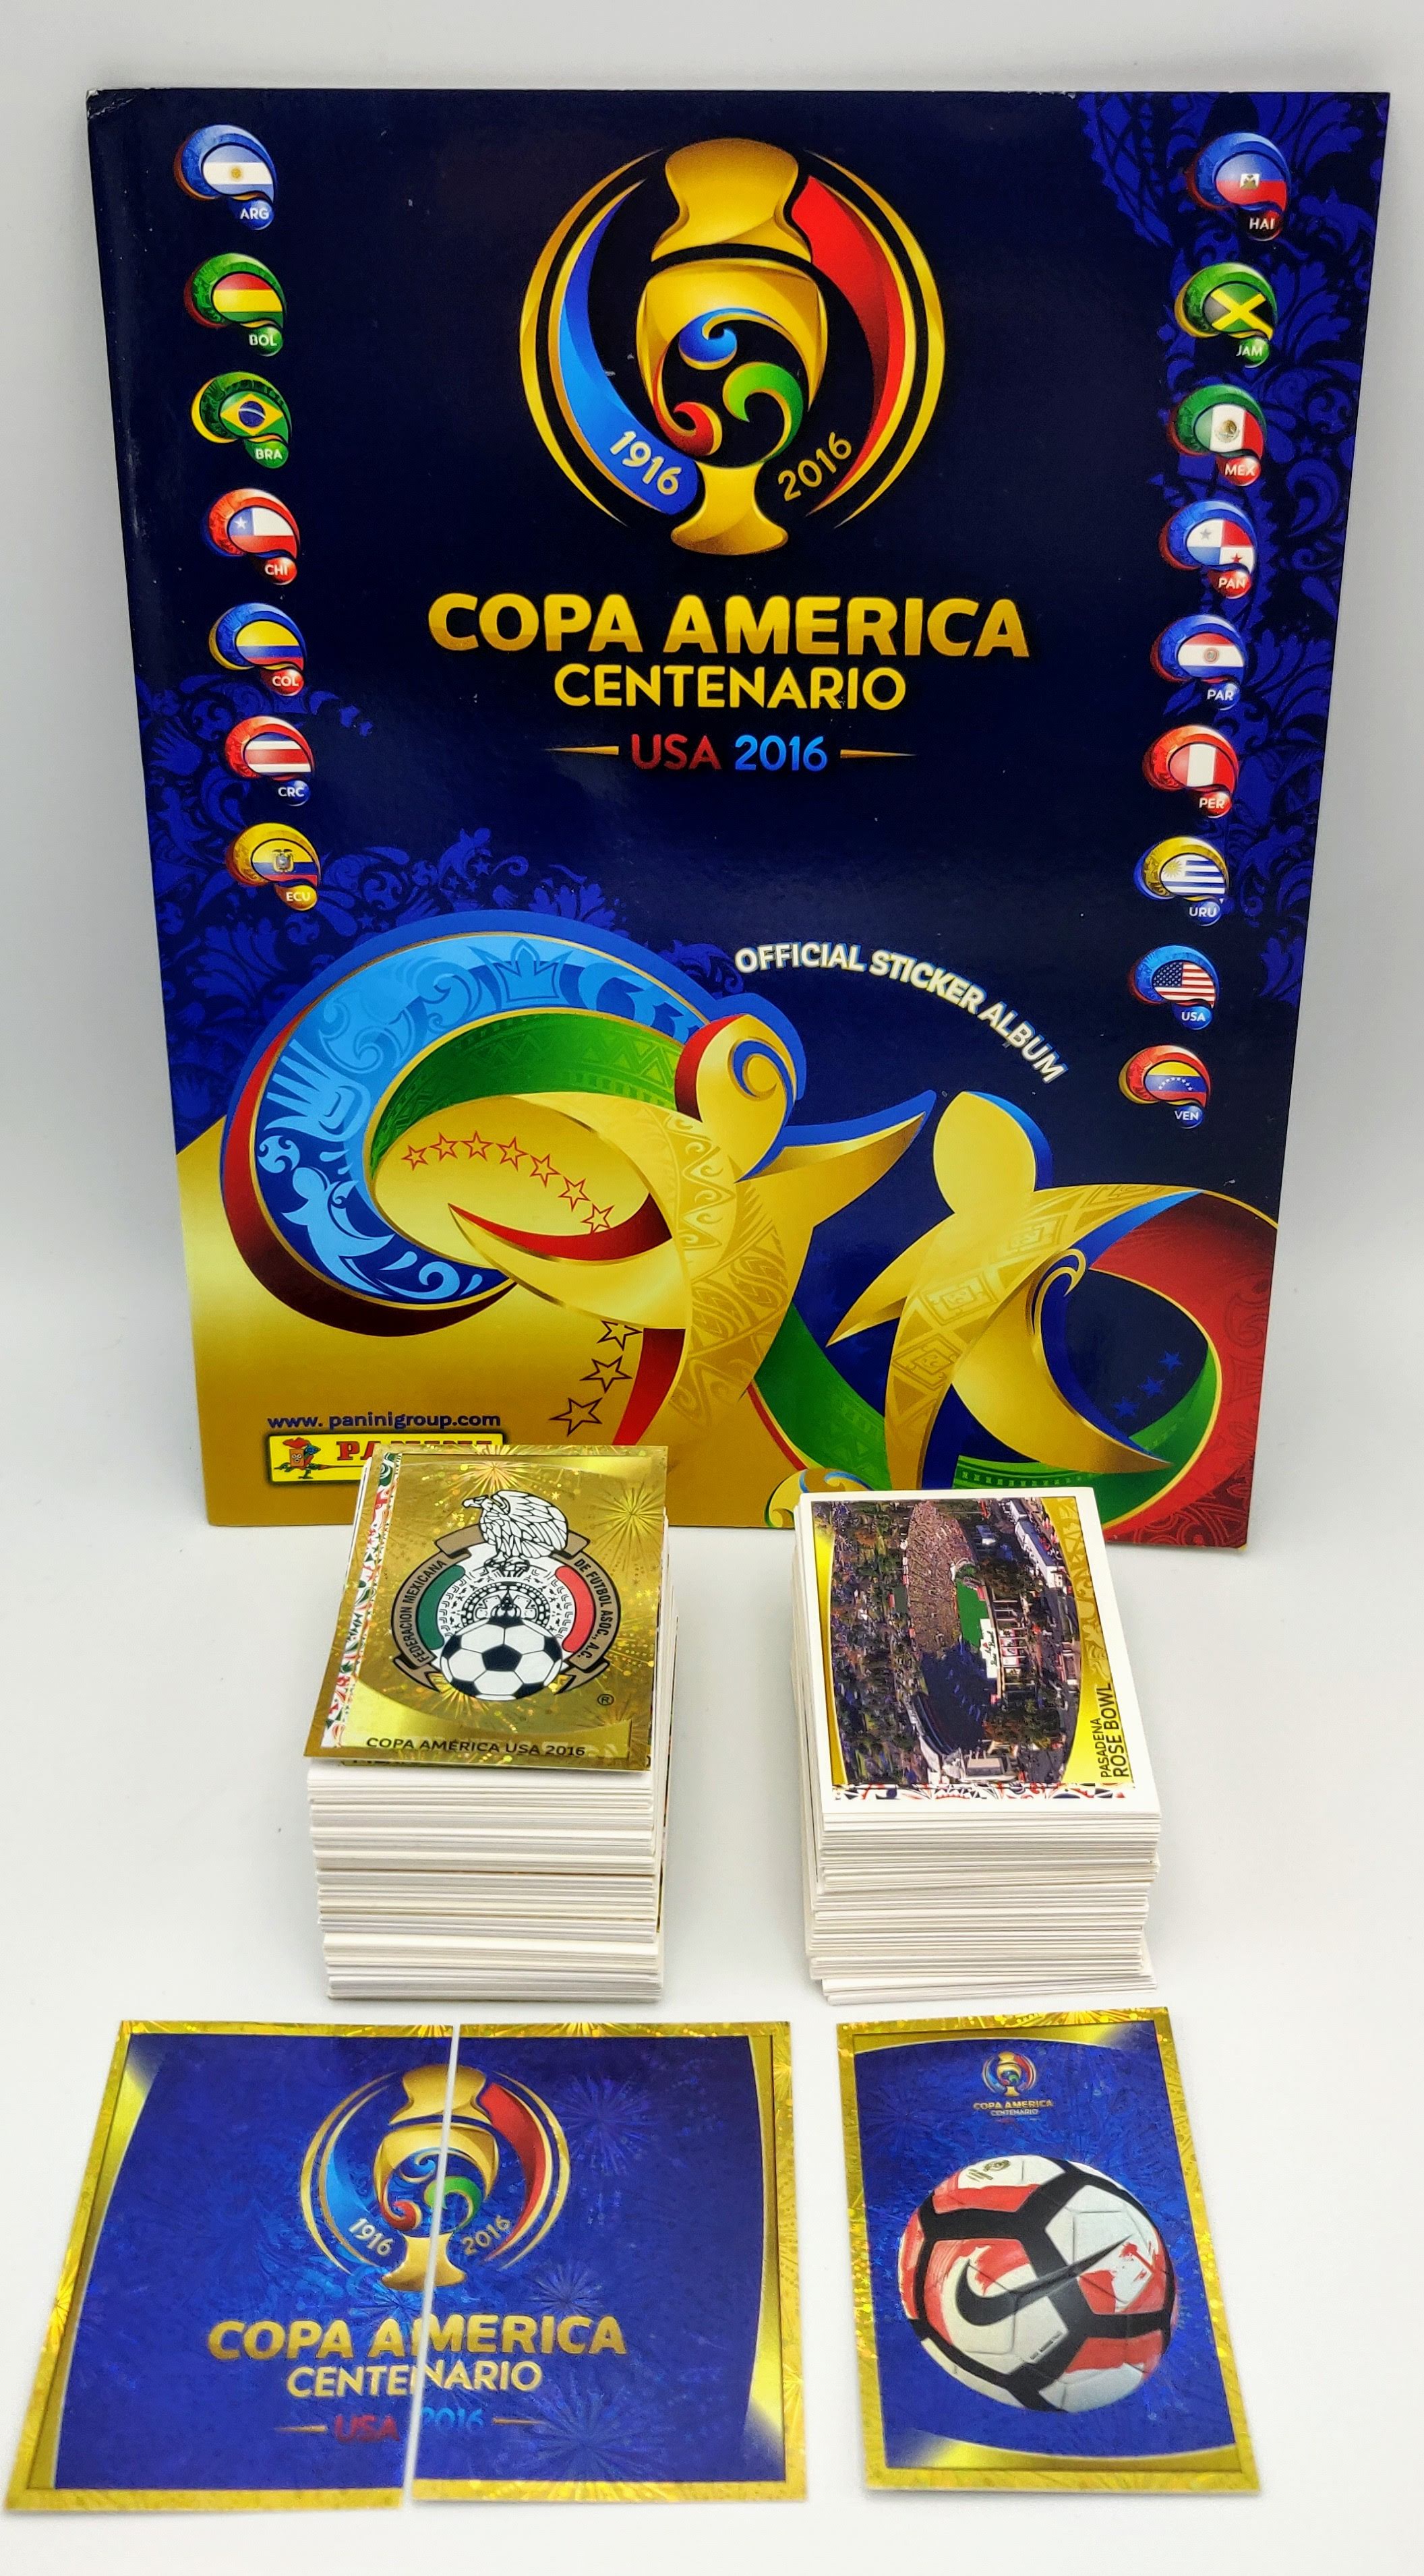 Copa America Centenario USA 2016 album vuoto + set completo figurine Panini